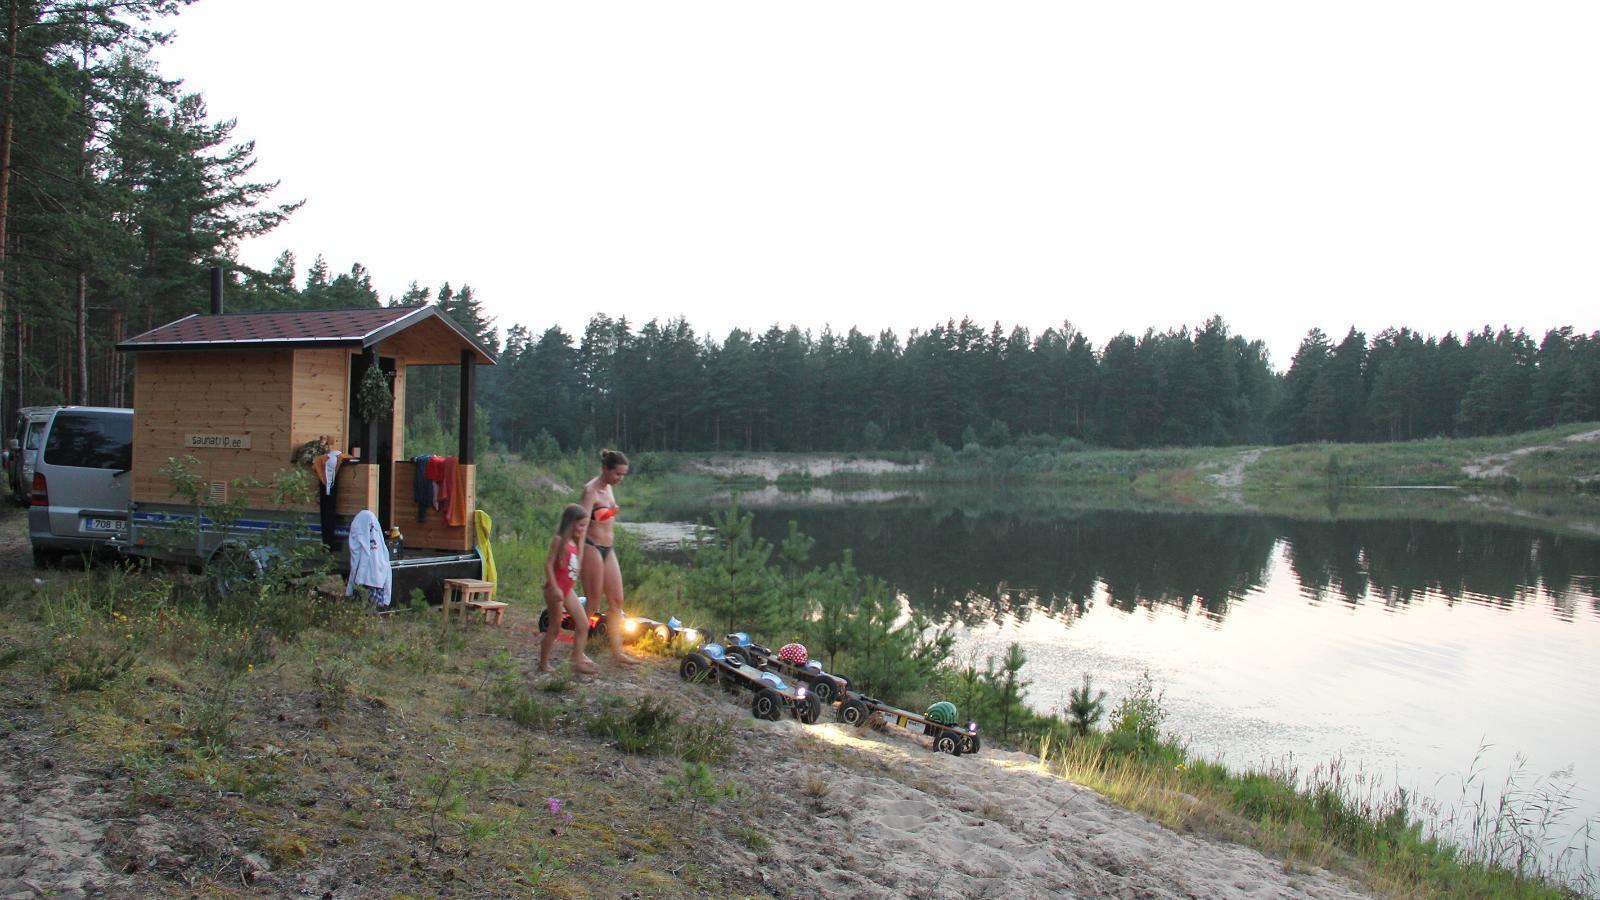 Saunatrip - Perävaunusaunan vuokraus ja kuljetus kaikkialla Virossa